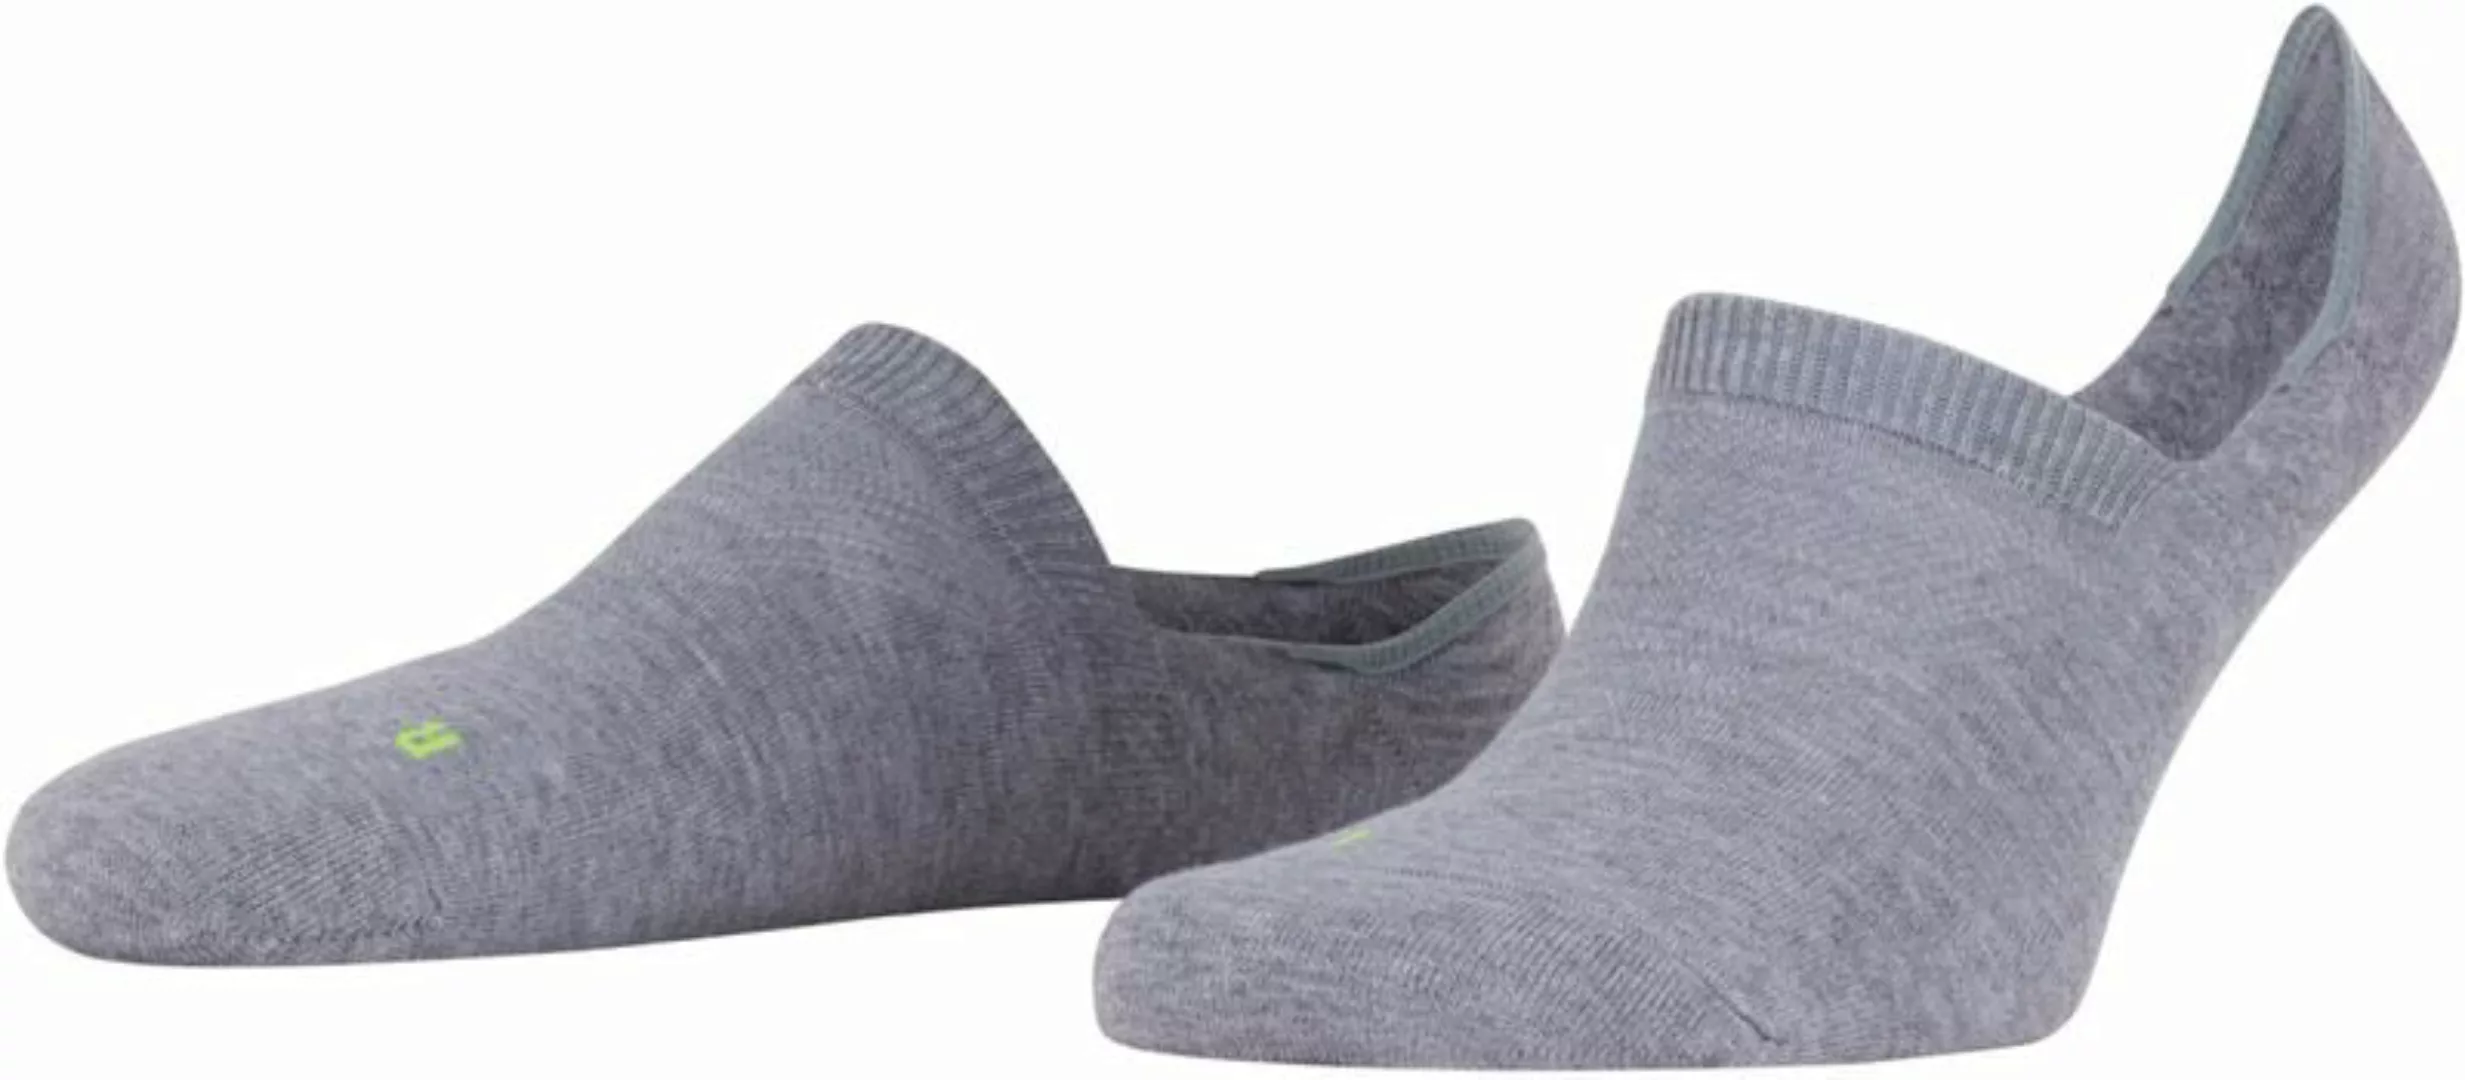 FALKE Cool Kick Antslip Socken Grau - Größe 42-43 günstig online kaufen